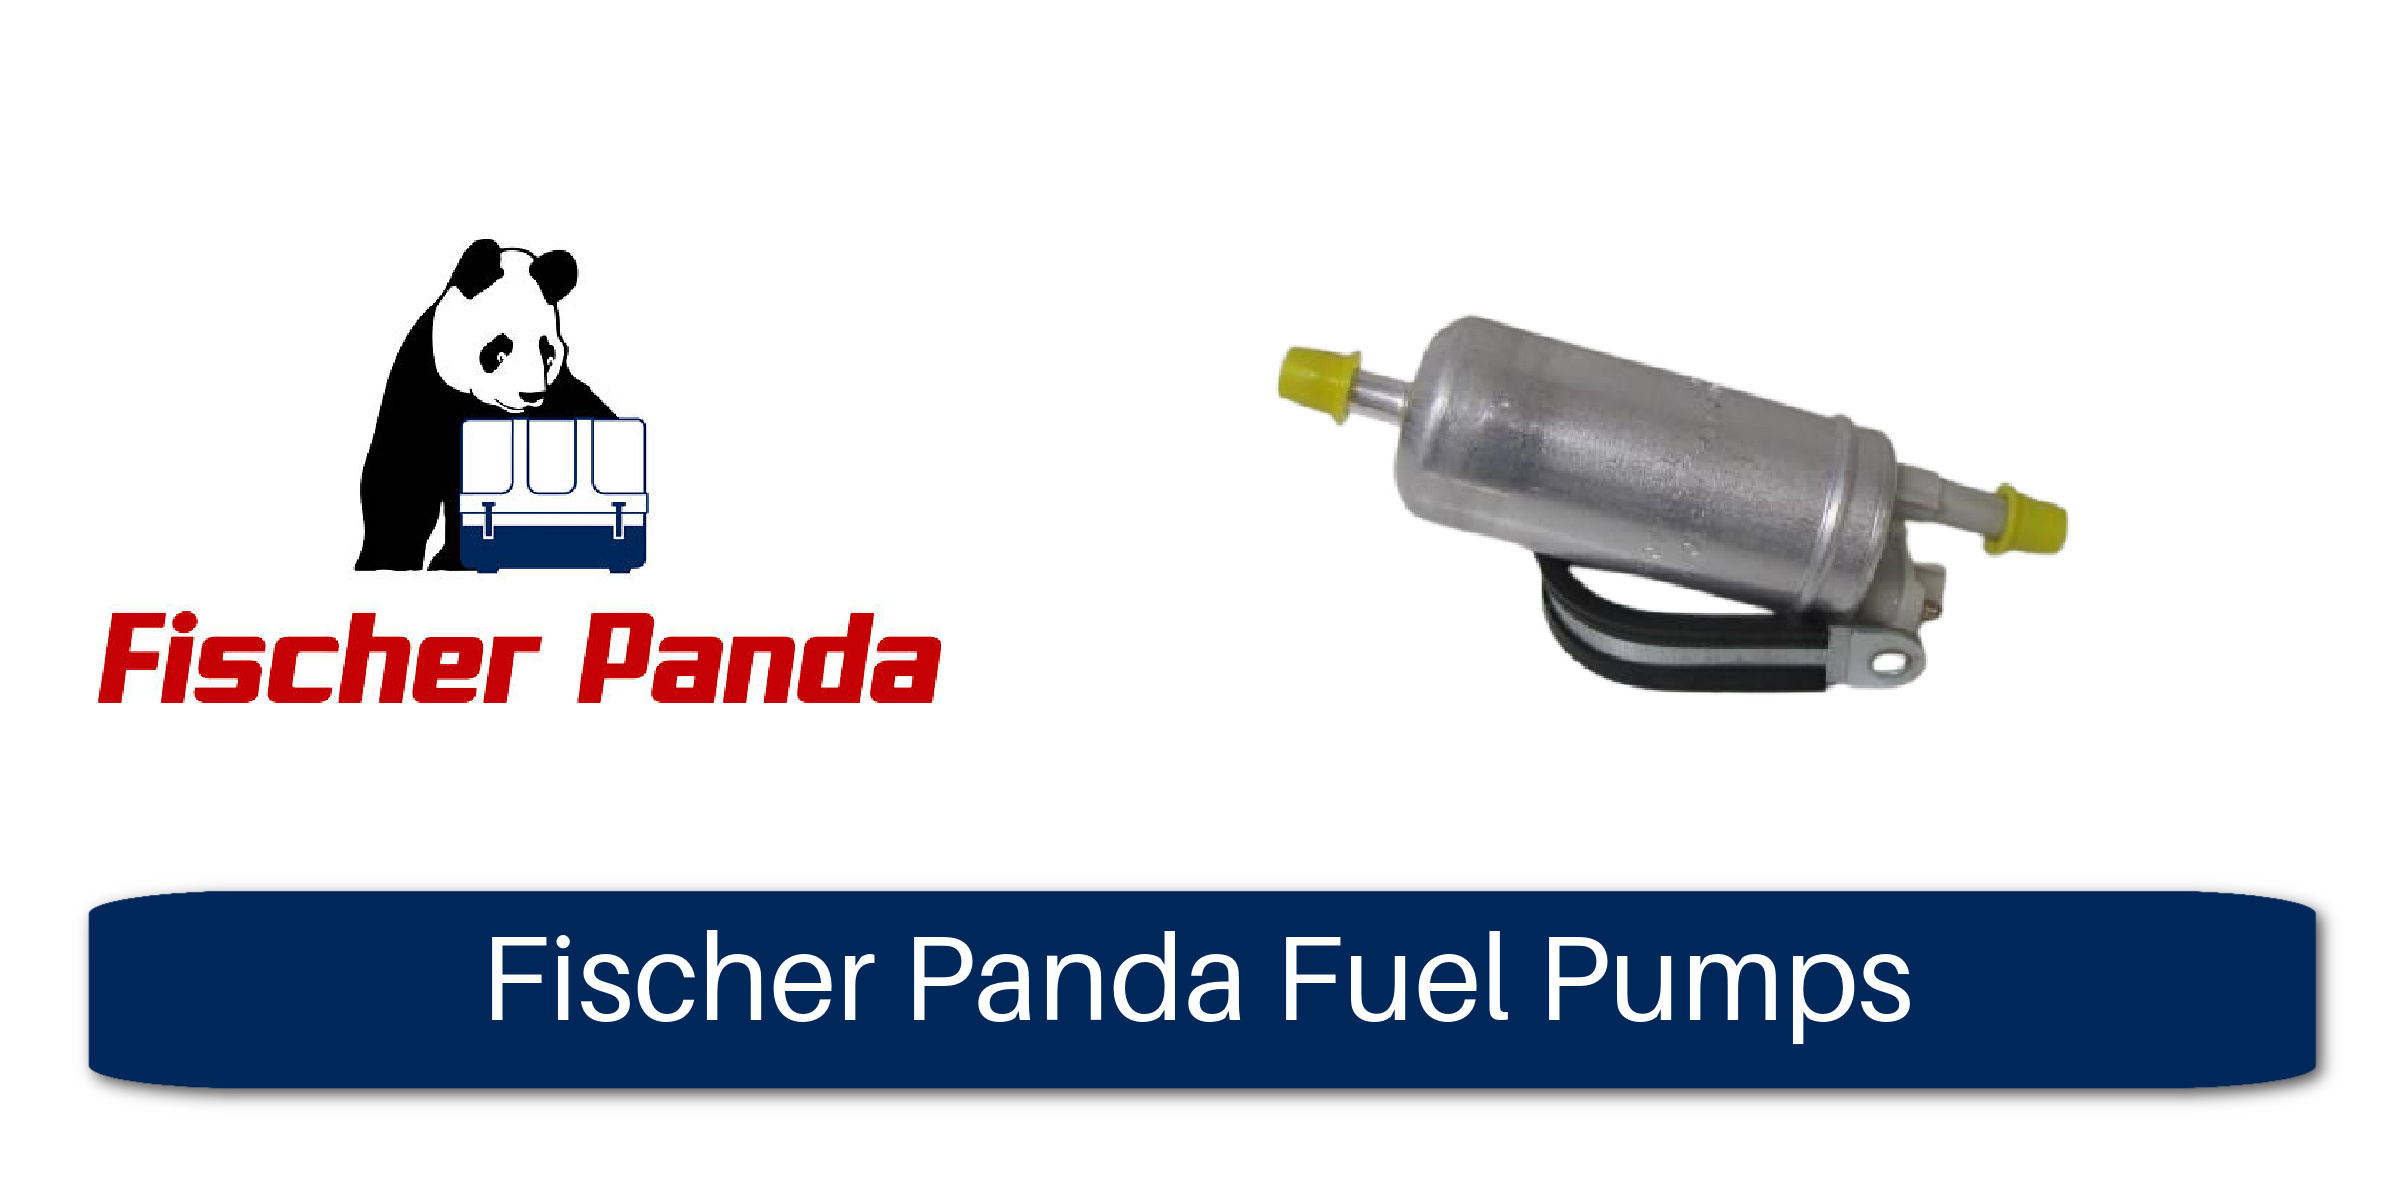 Fischer Panda Fuel Pumps